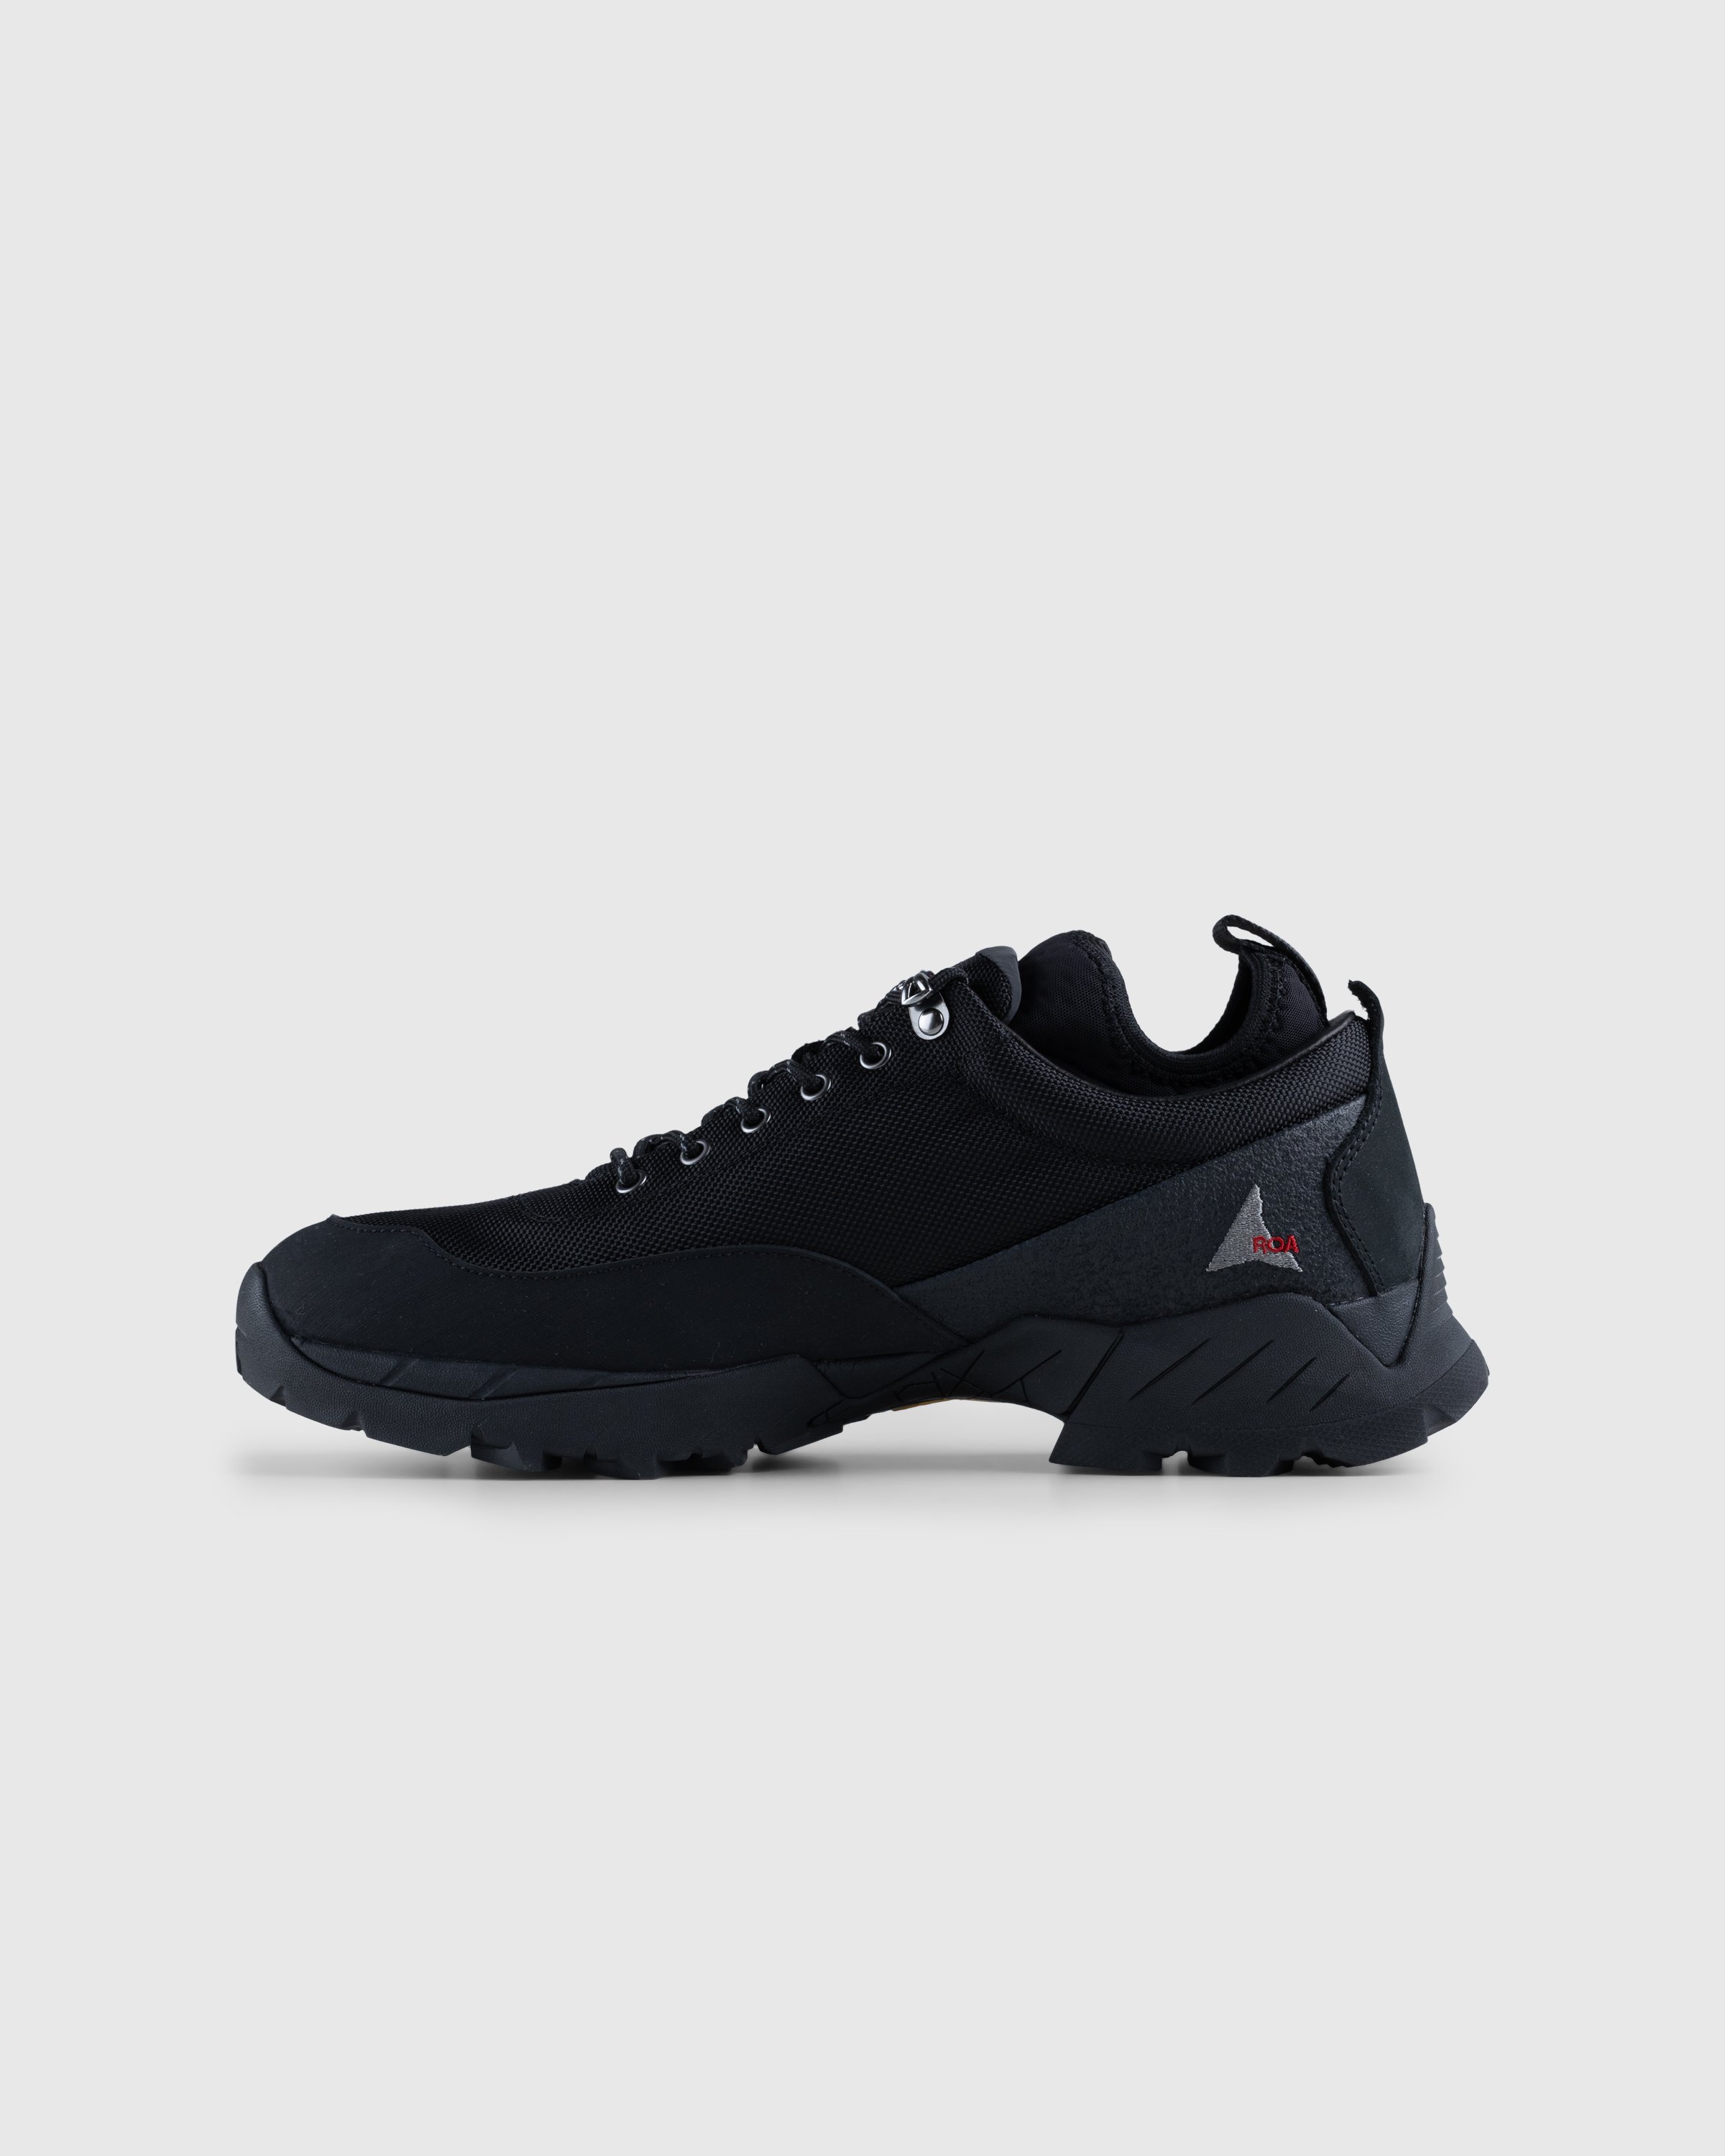 ROA - Neal Sneakers Black - Footwear - Black - Image 2